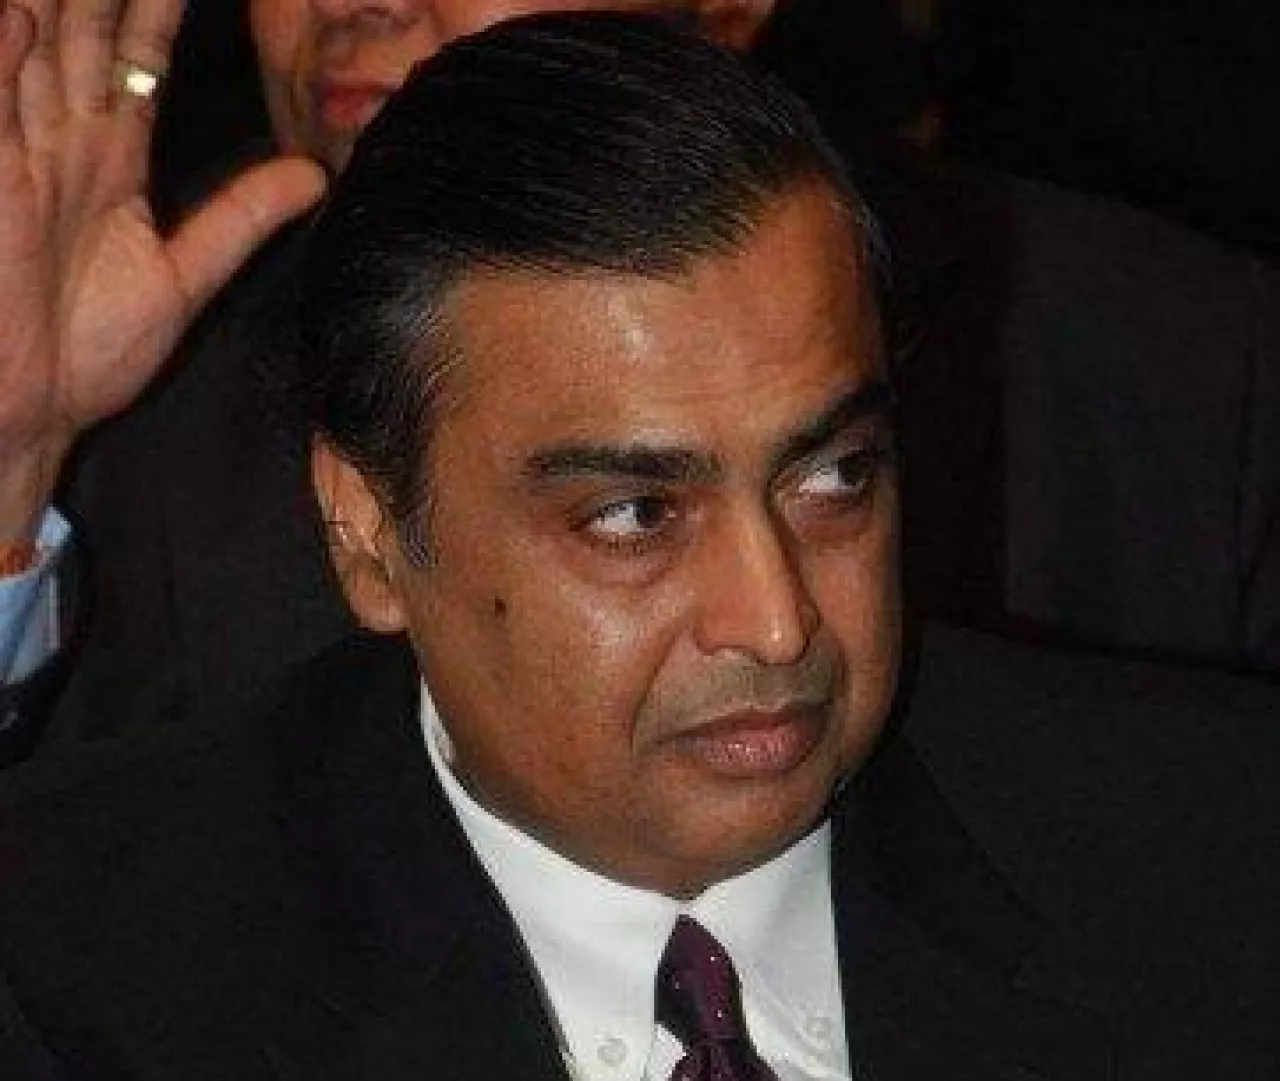 Mukesh Ambani (wikimedia.org)